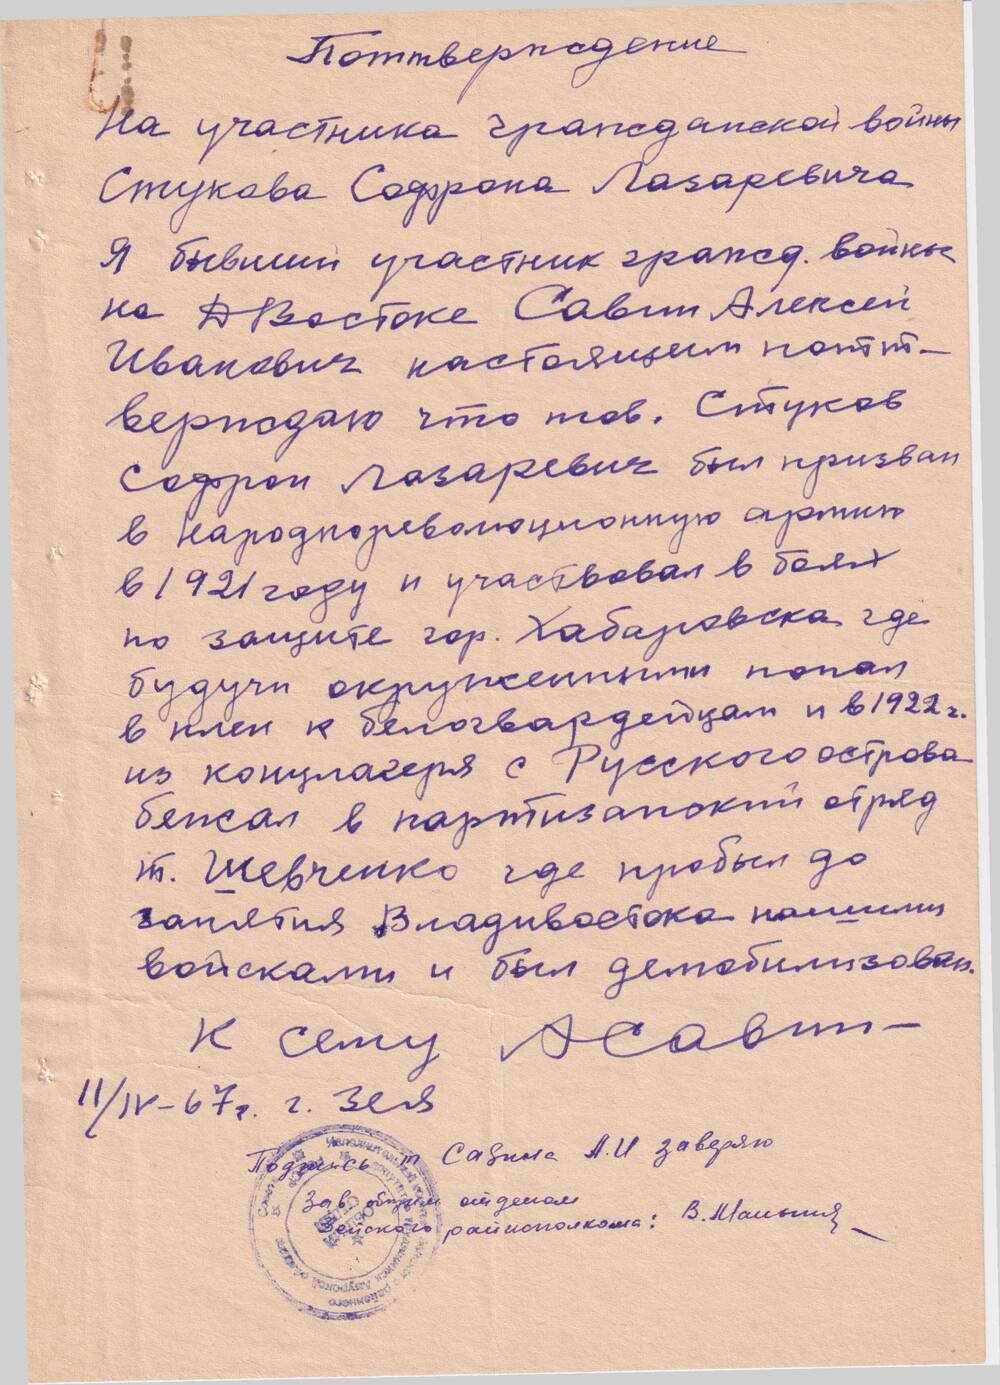 Справка, подтверждающая участие  в революционном движении на Дальнем Востоке  Стукова  Софрона Лазаревича, подписанная Савиным Алексеем Ивановичем.